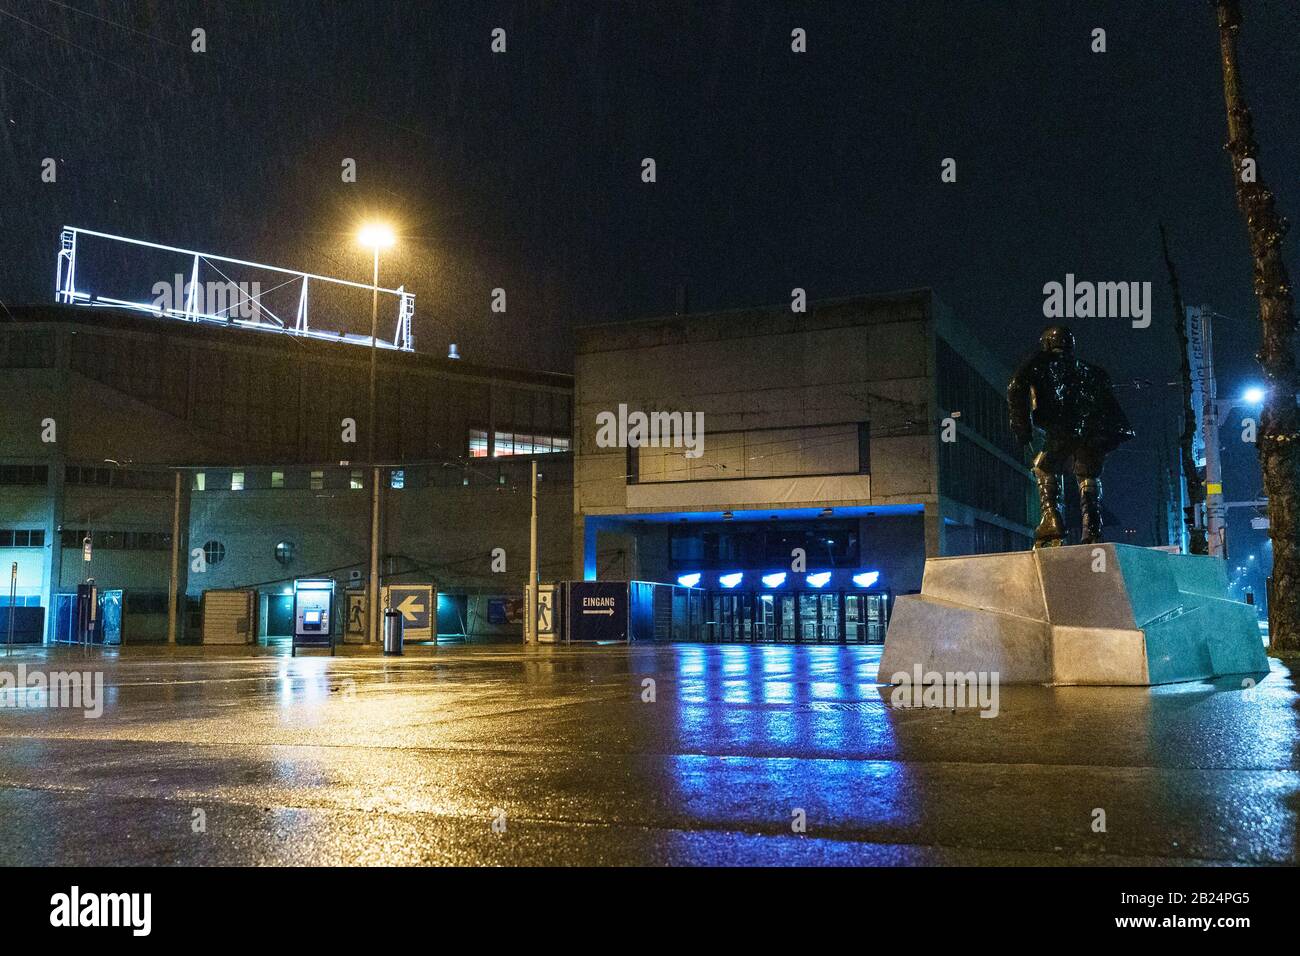 29.02.2020, Zurich, Hallenstadion, hockey sobre hielo NL: ZSC Lions - EV Zug, entrada de profesores antes del partido fantasma. Foto de stock